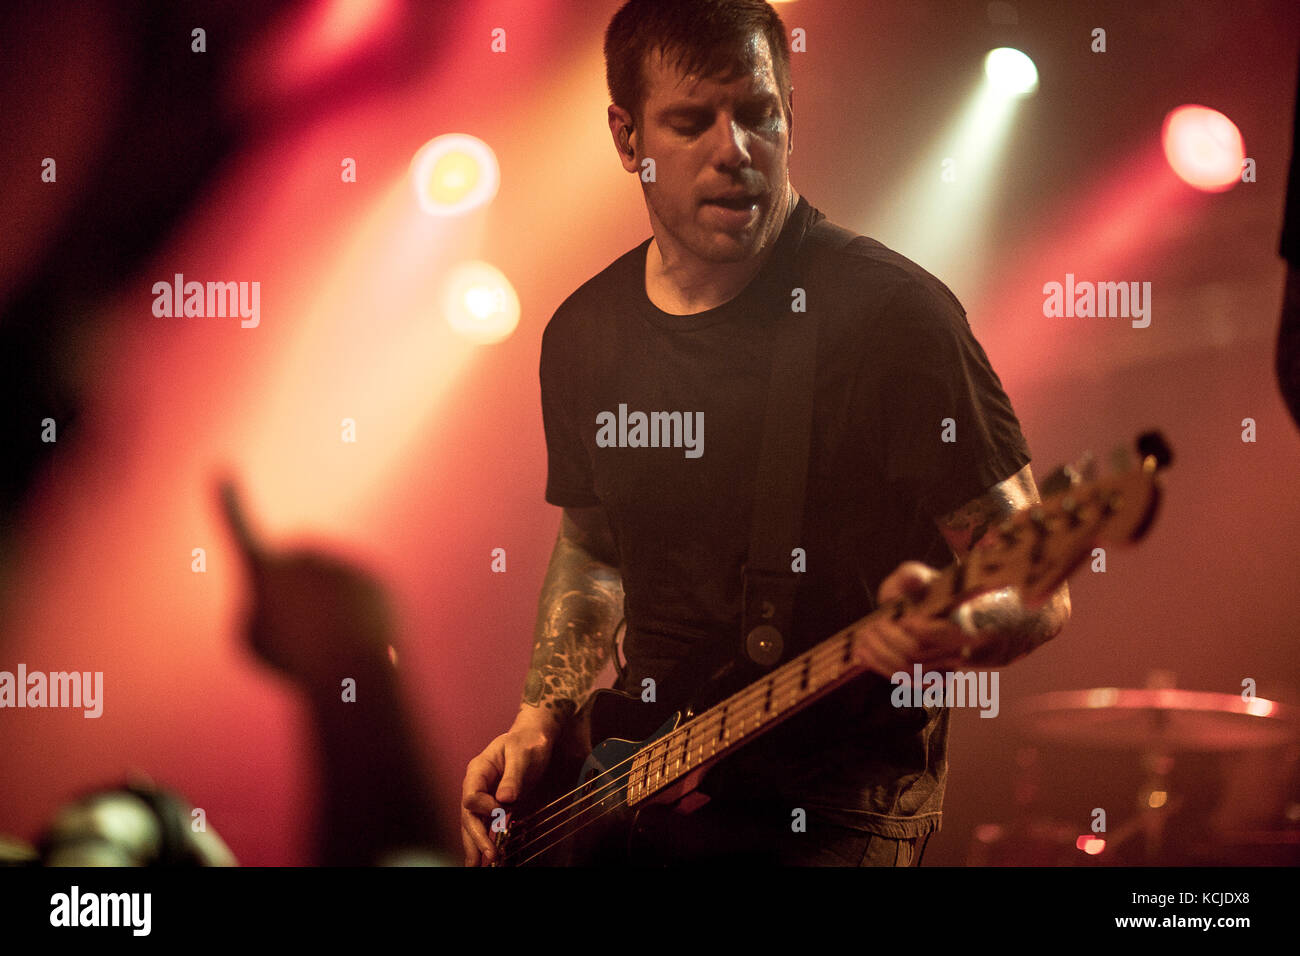 L'americano Christian post-hardcore Underoath esegue un concerto dal vivo a Pumpehuset a Copenhagen. Qui il bassista Grant Brandell è visto dal vivo sul palco. Danimarca, 16/05 2017. Foto Stock